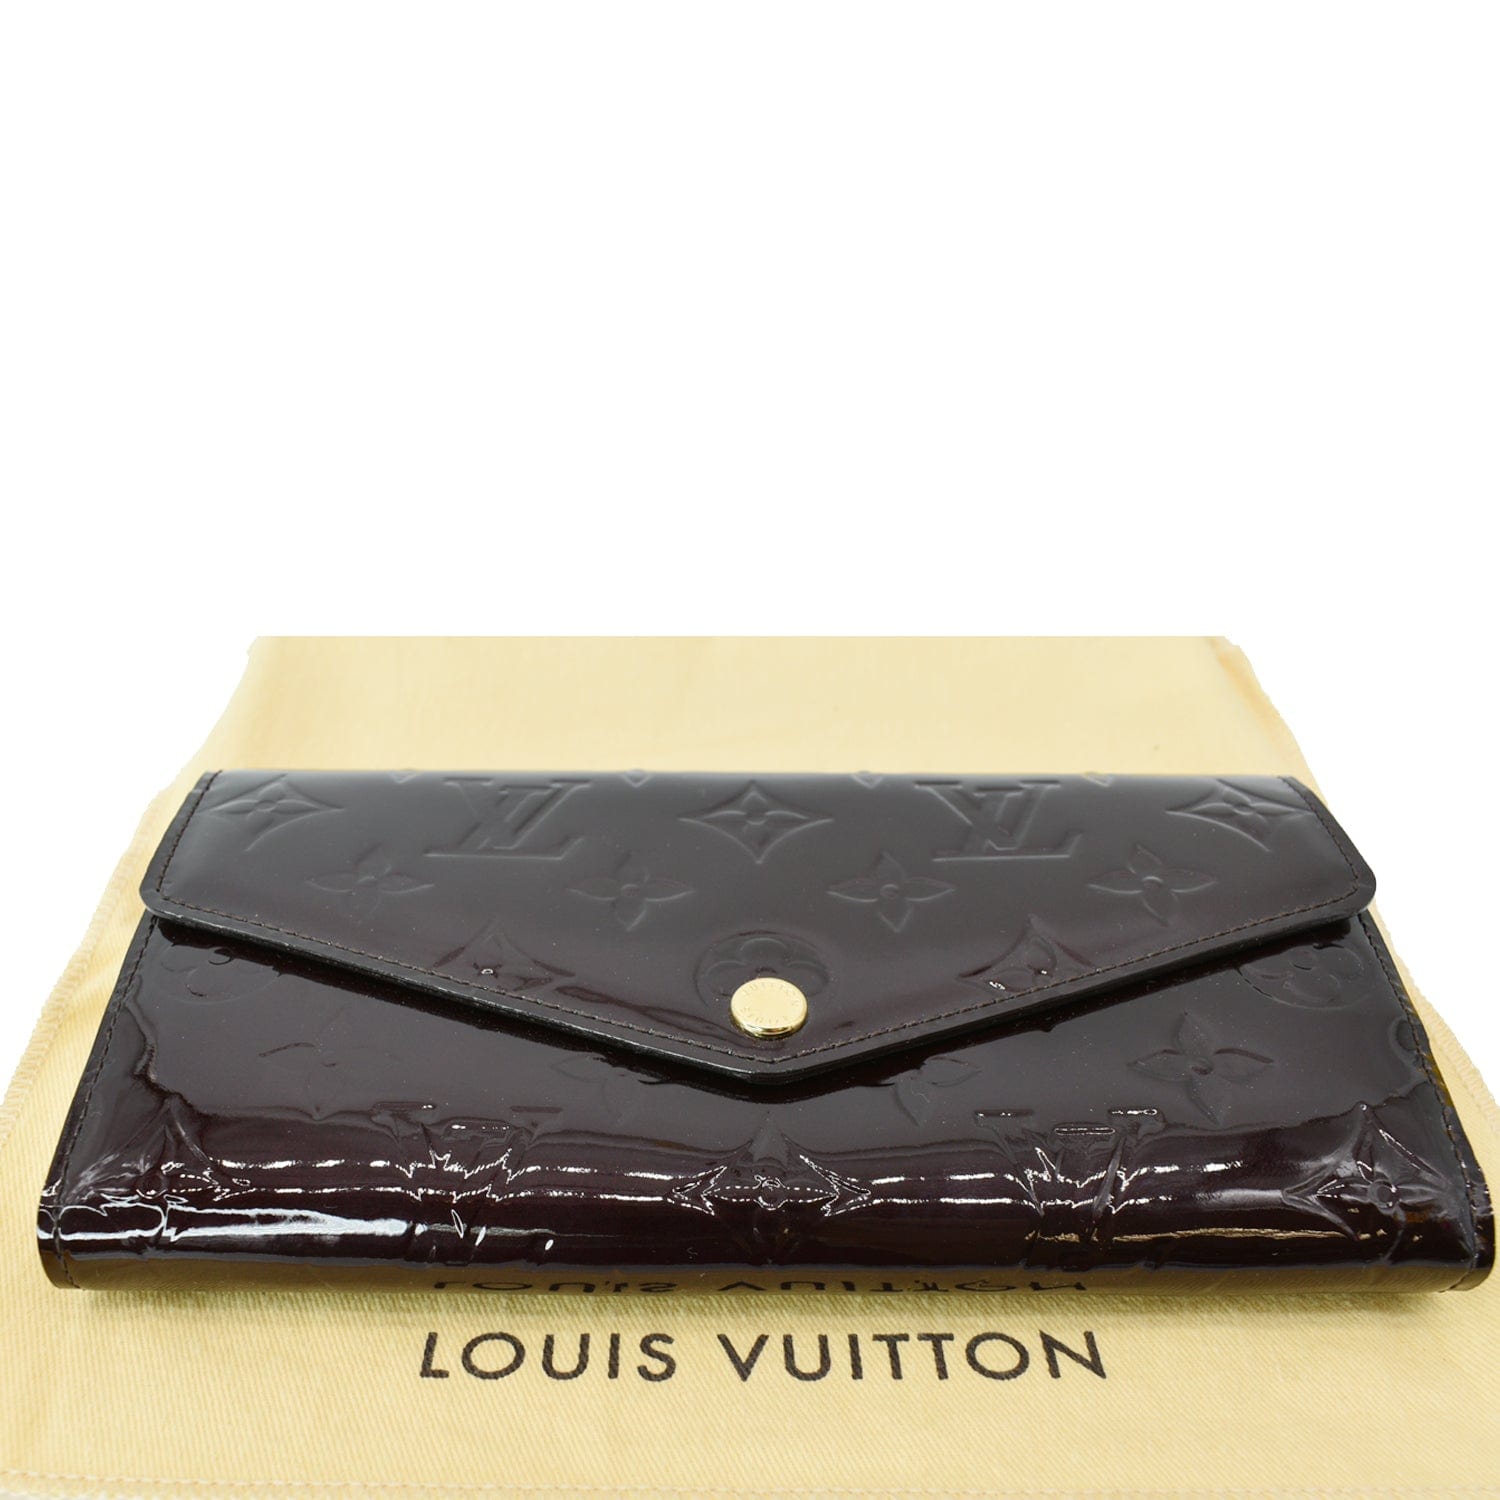 LOUIS VUITTON Monogram Canvas Leather Sarah Envelope Long Wallet